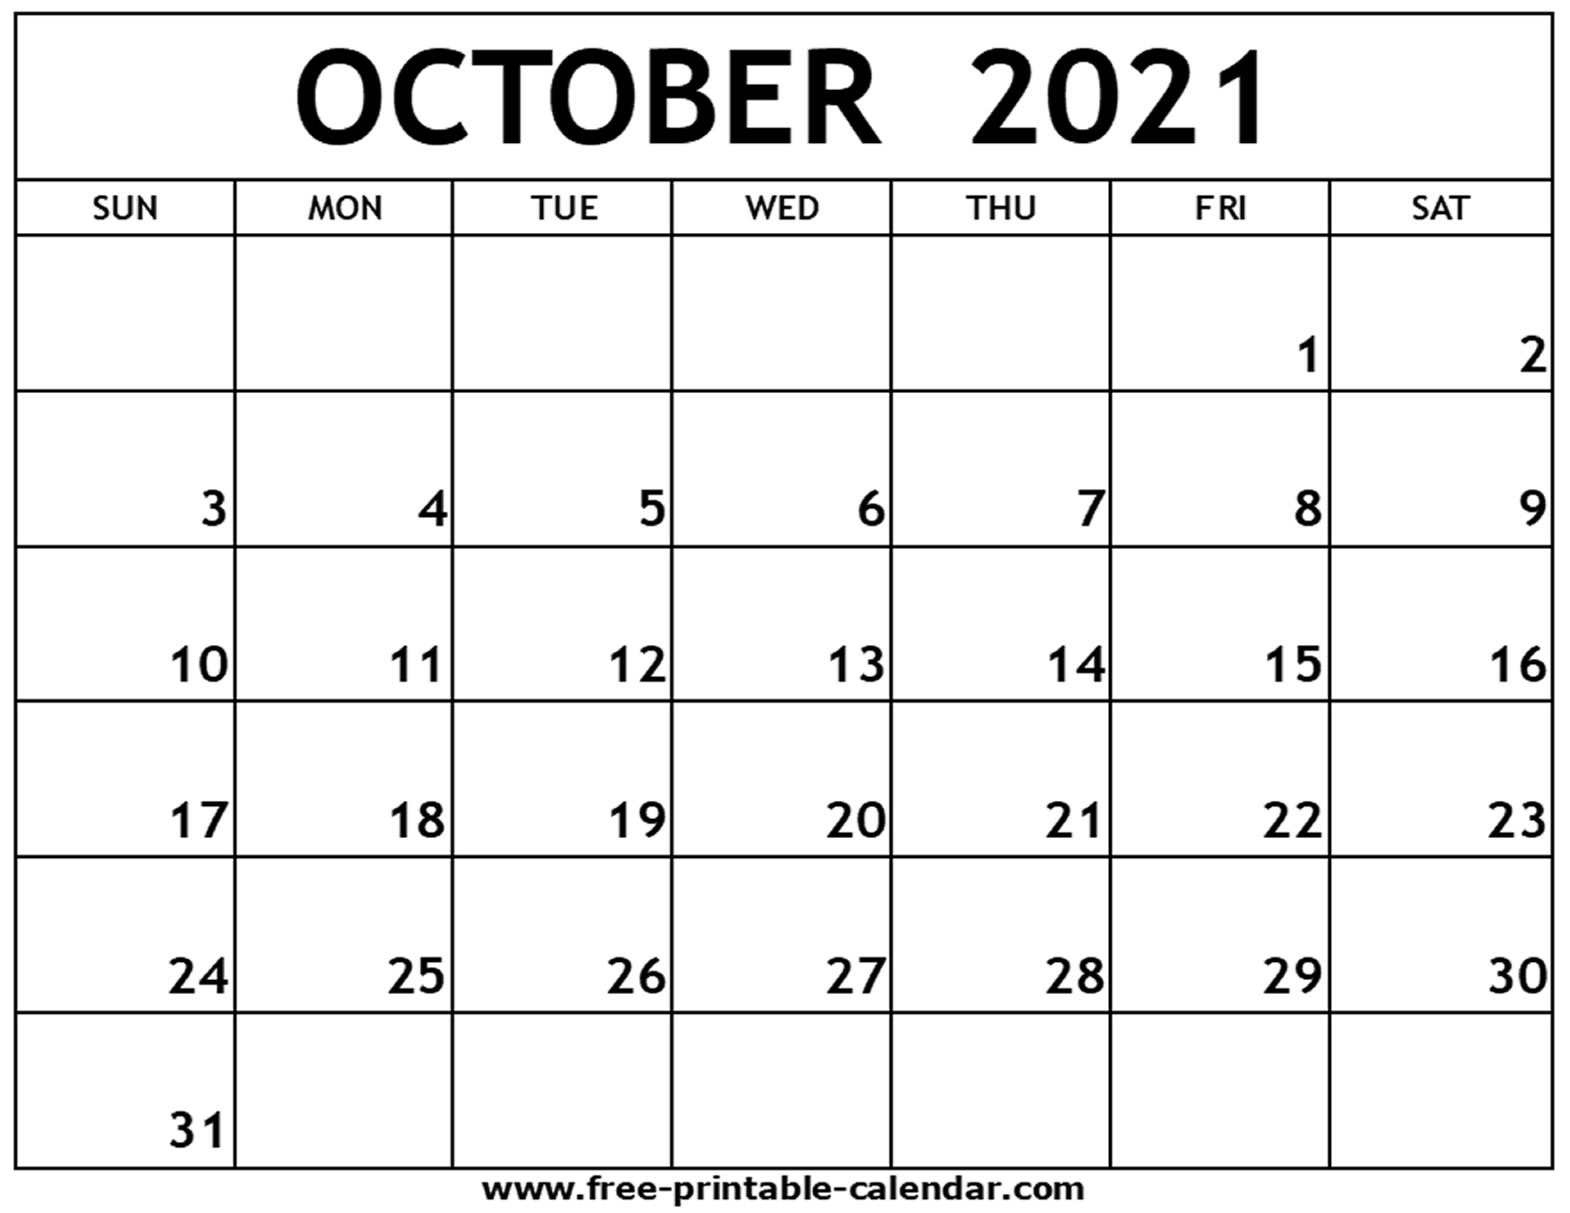 Fiscal Calendar For October 2021 | Calendar Printables Free Blank Print A Calendar October 2021